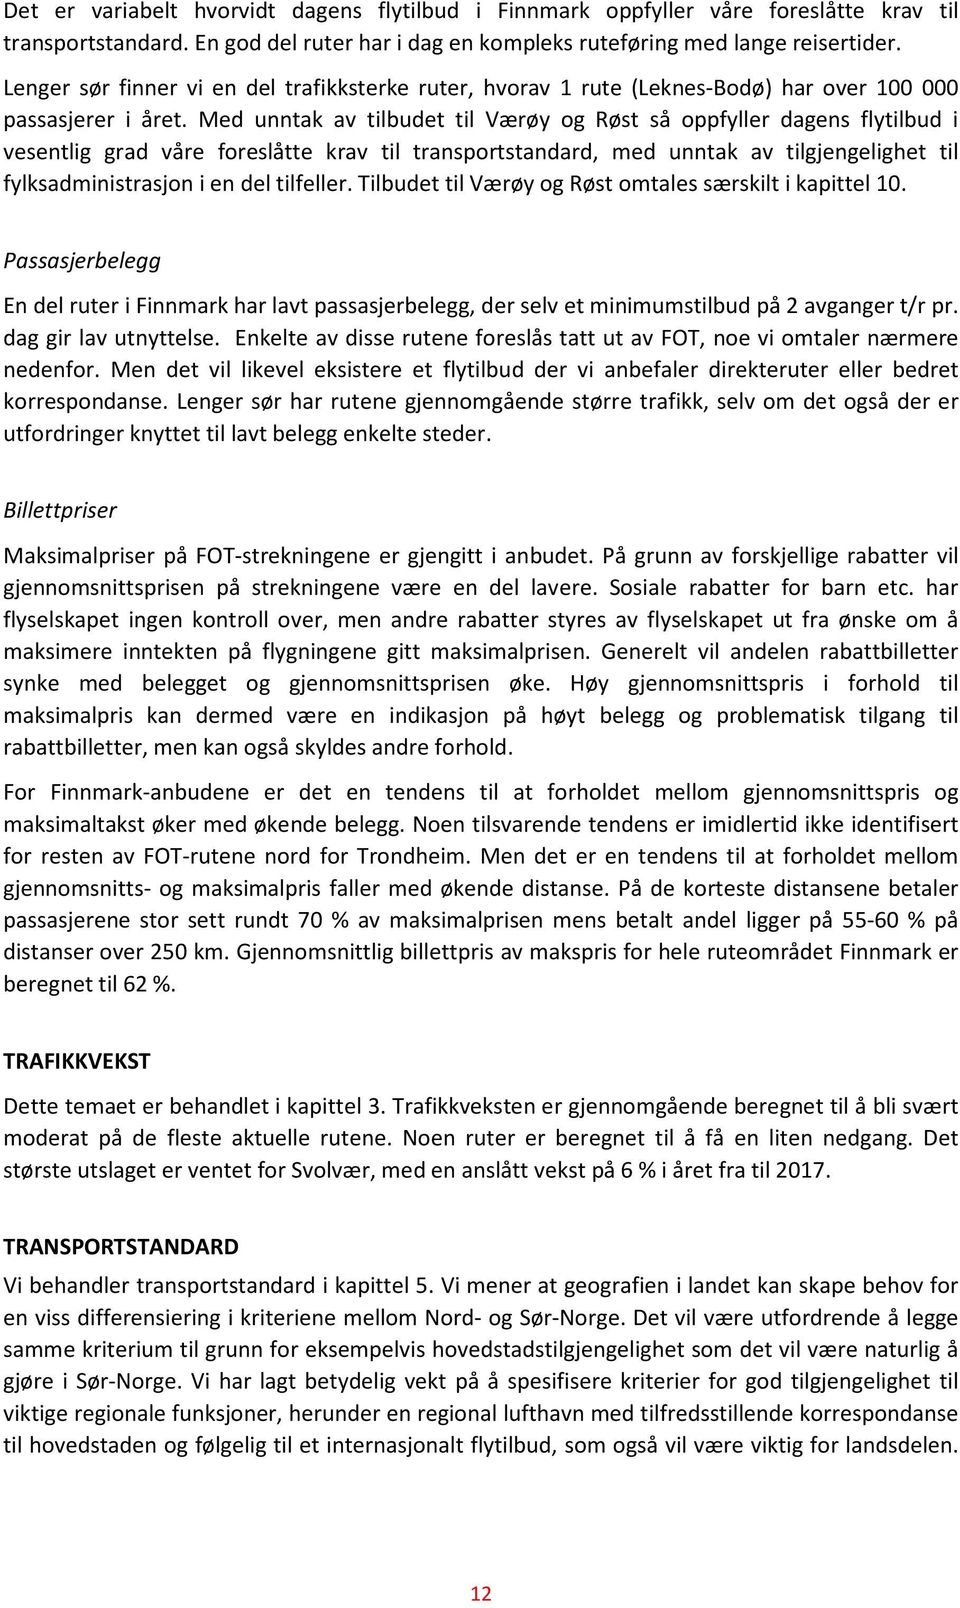 Med unntak av tilbudet til Værøy og Røst så oppfyller dagens flytilbud i vesentlig grad våre foreslåtte krav til transportstandard, med unntak av tilgjengelighet til fylksadministrasjon i en del